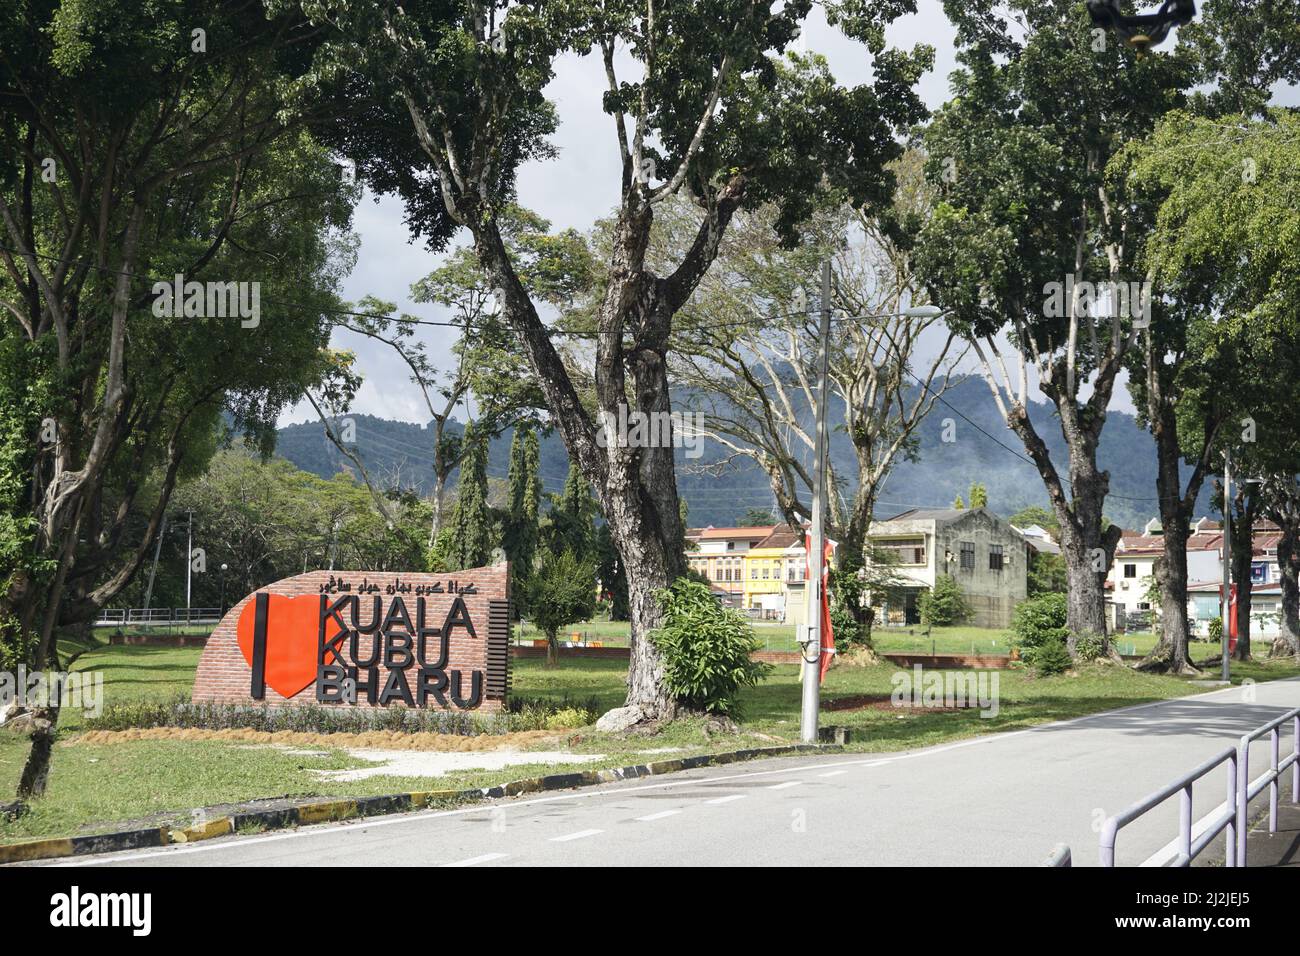 welcome signboard to Kuala Kubu Bharu, Selangor, Malaysia Stock Photo